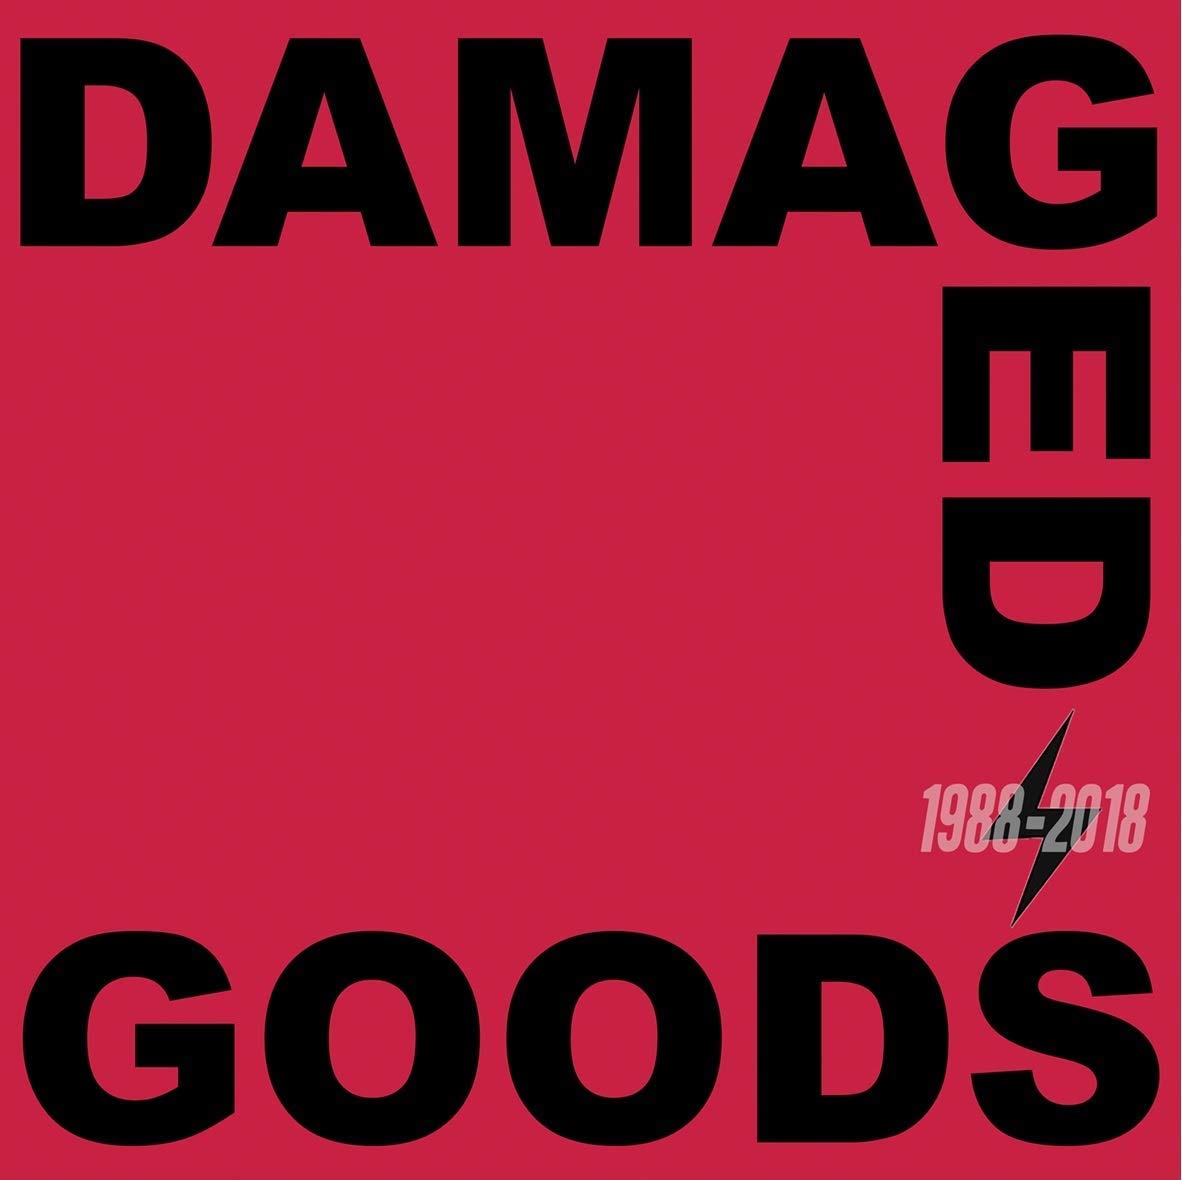 DAMAGED GOODS 1988-2018 / VARIOUS